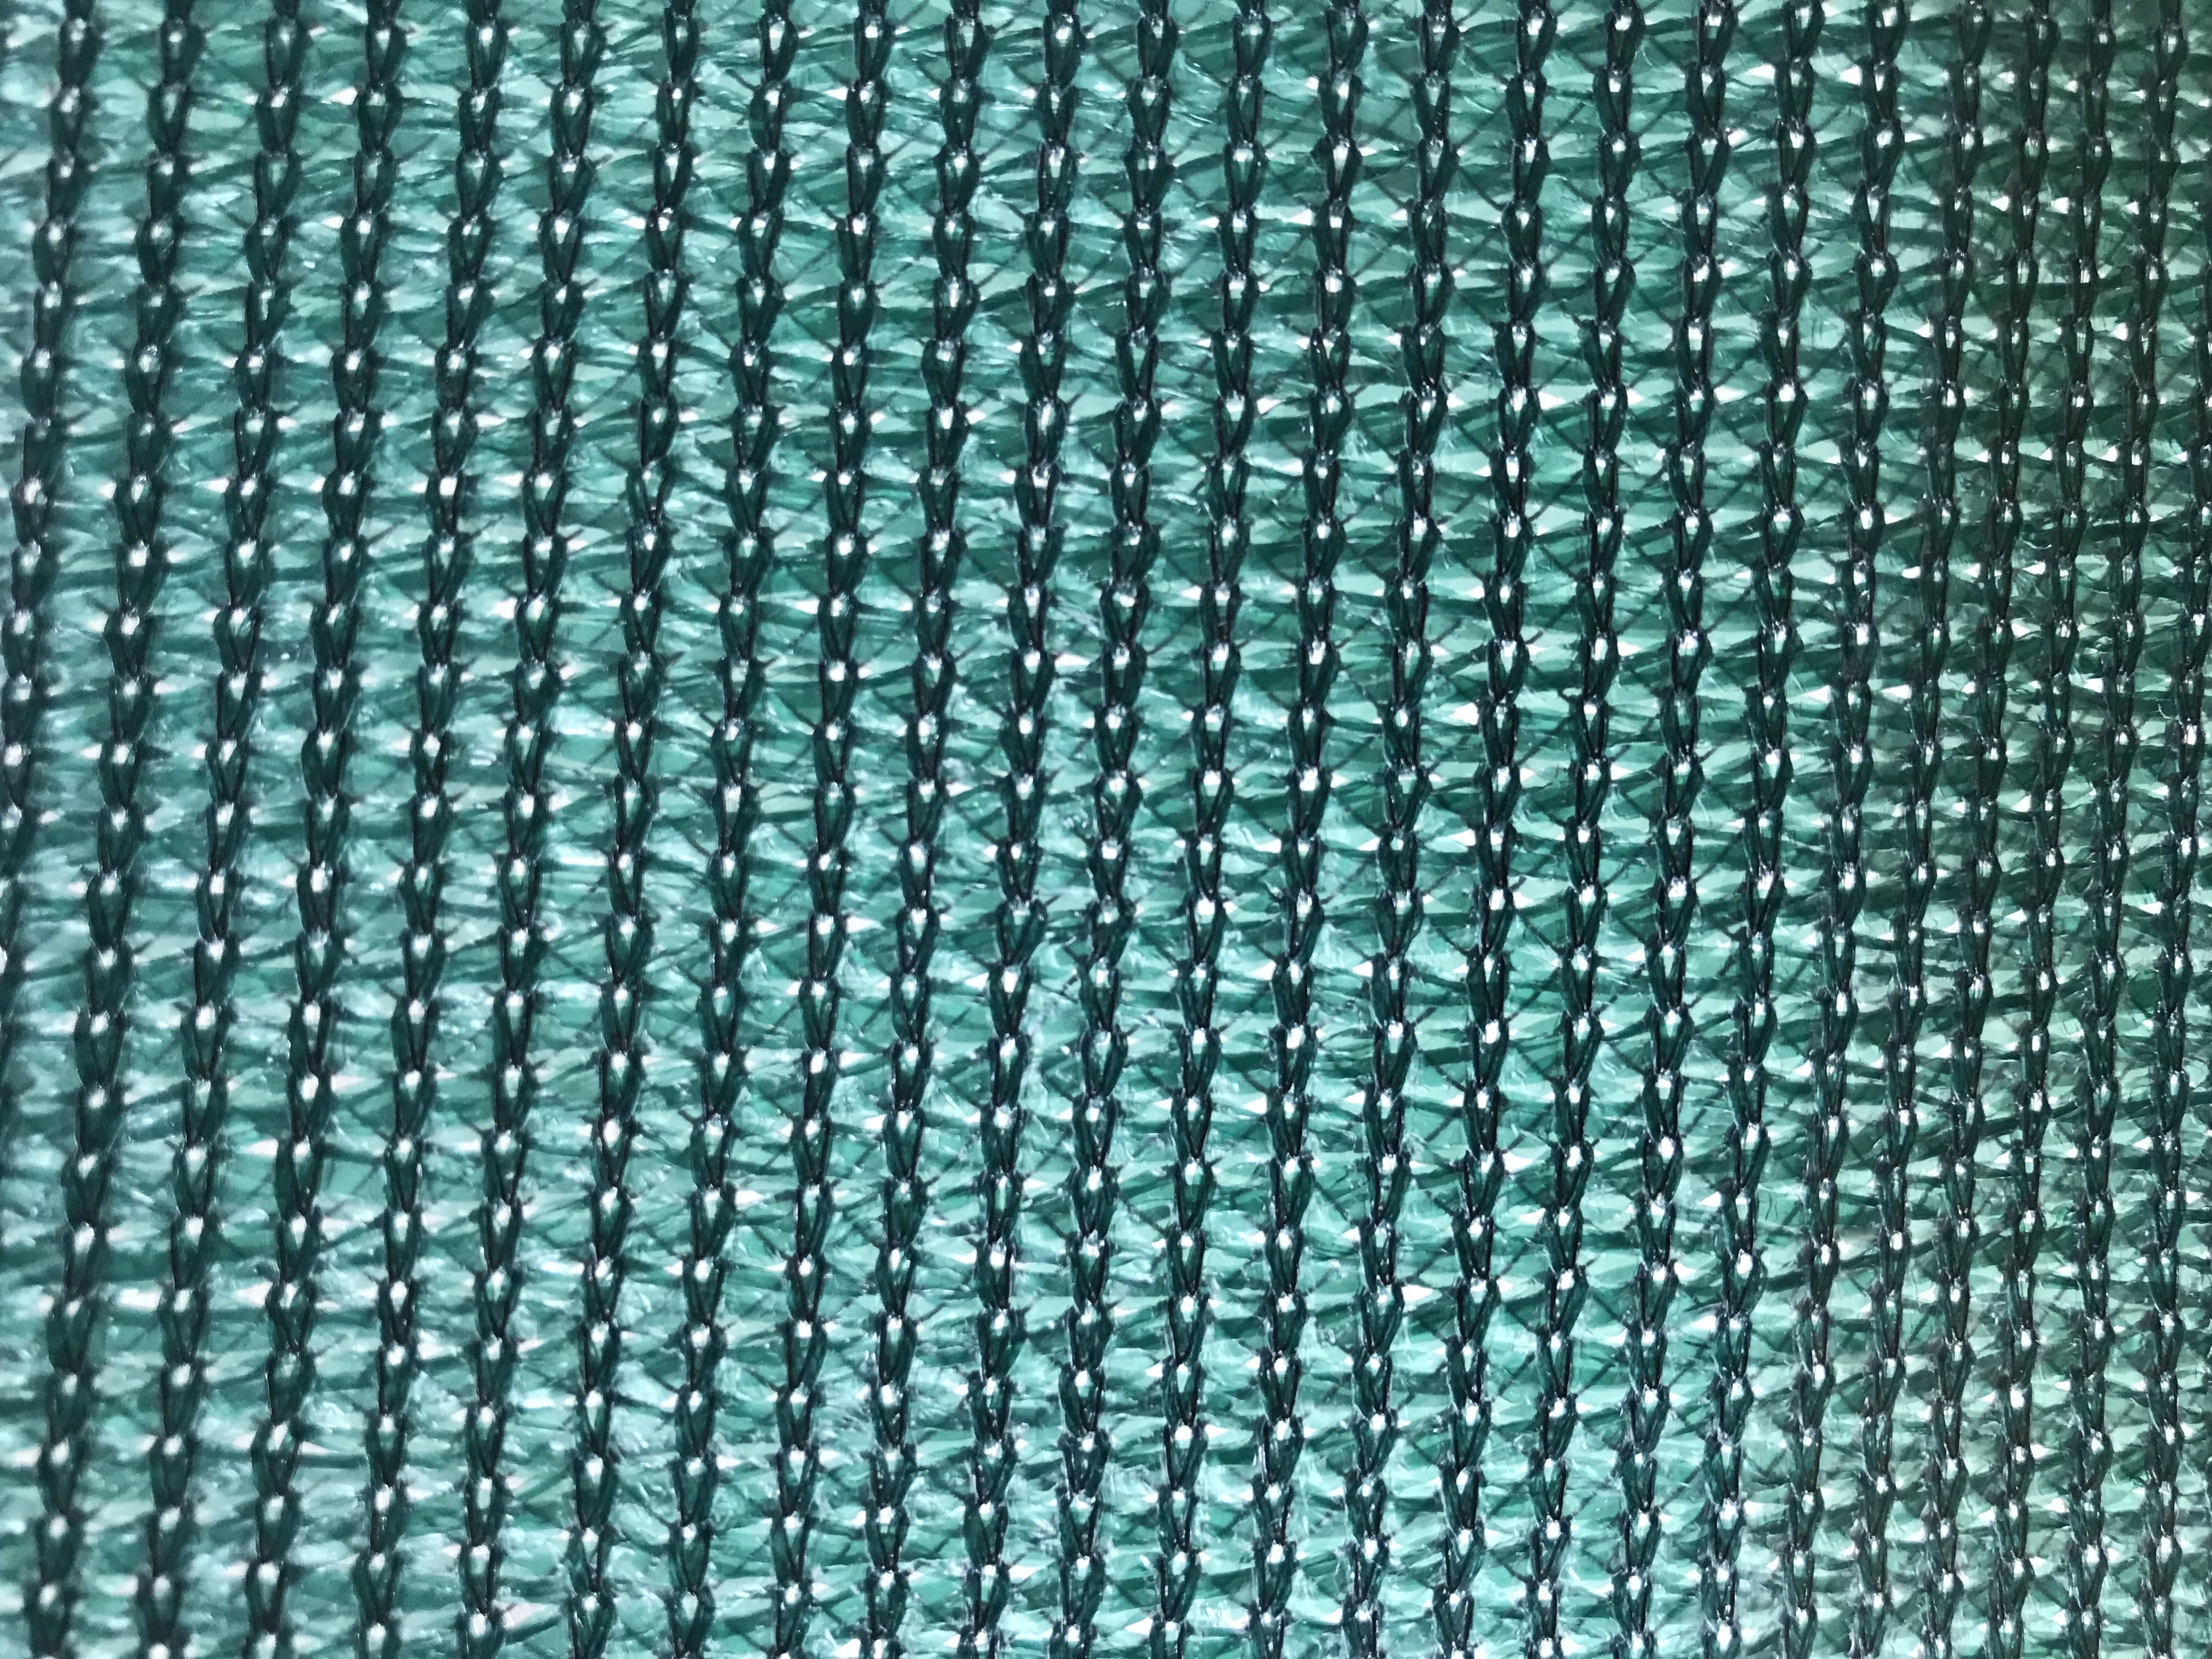 100% HDPE 320GSM Green Waterproof Shade Net